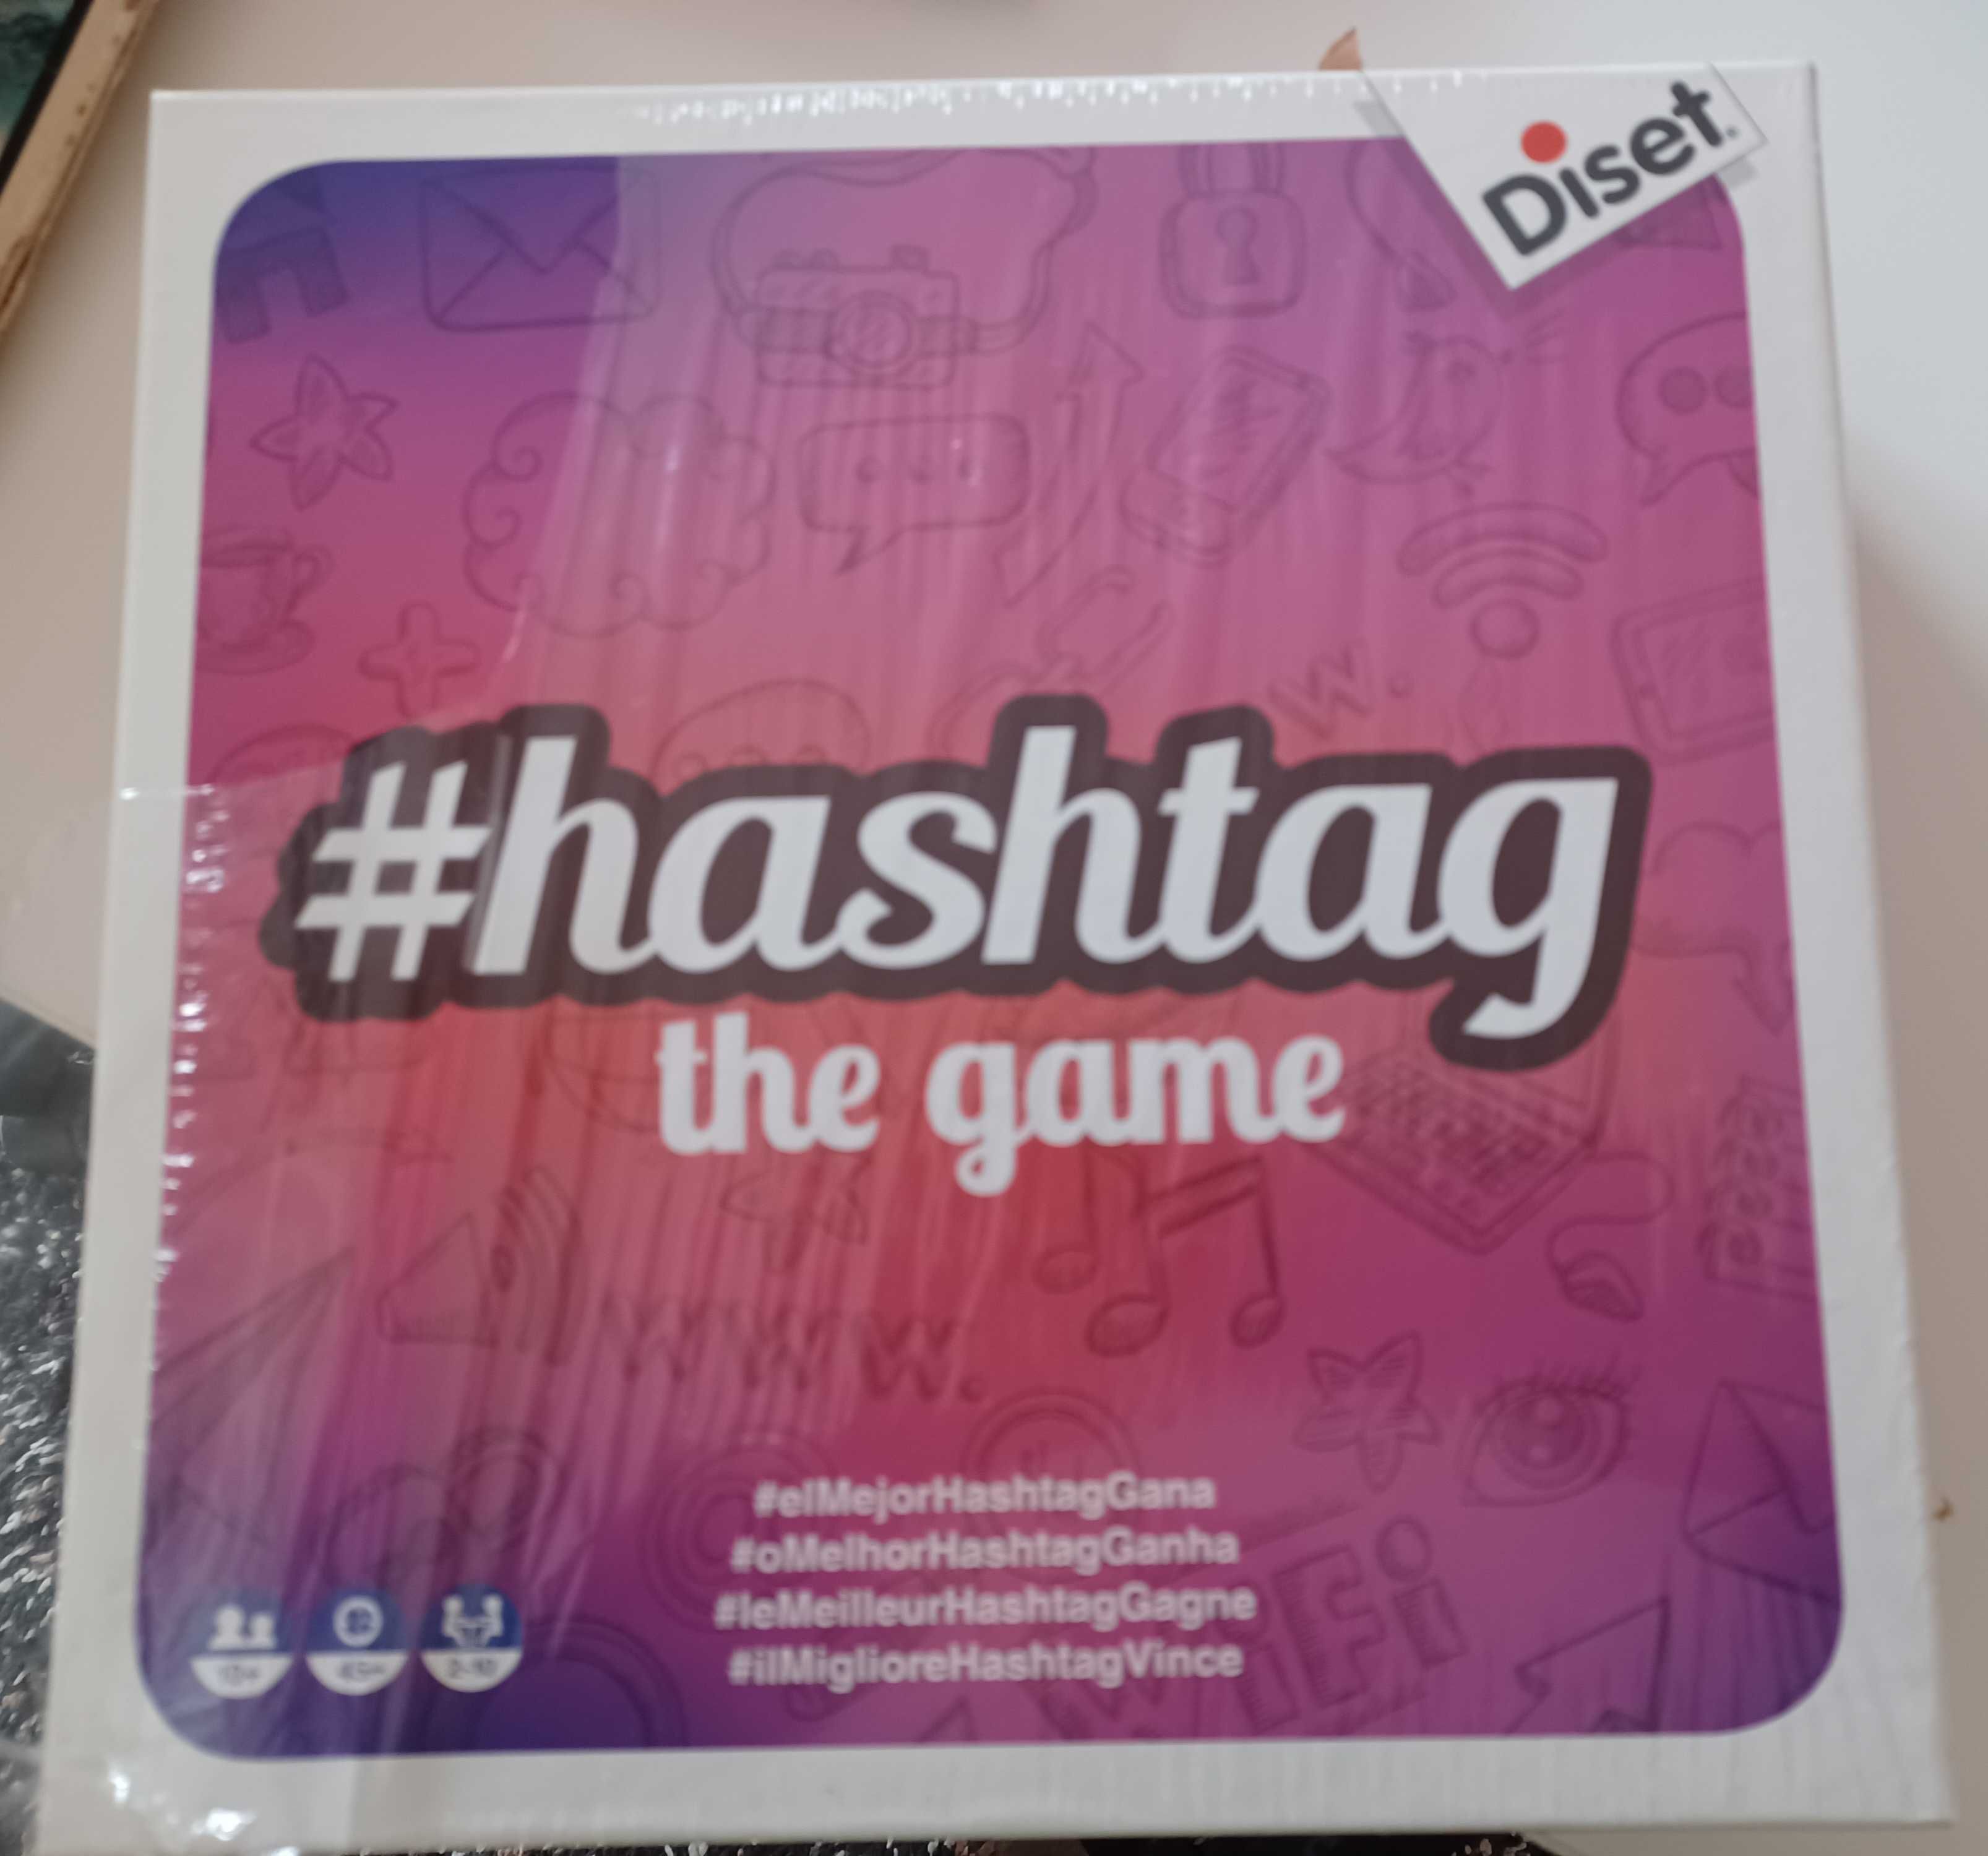 Jogo Hashtag - Diset - 10+ anos - Novo (várias línguas)